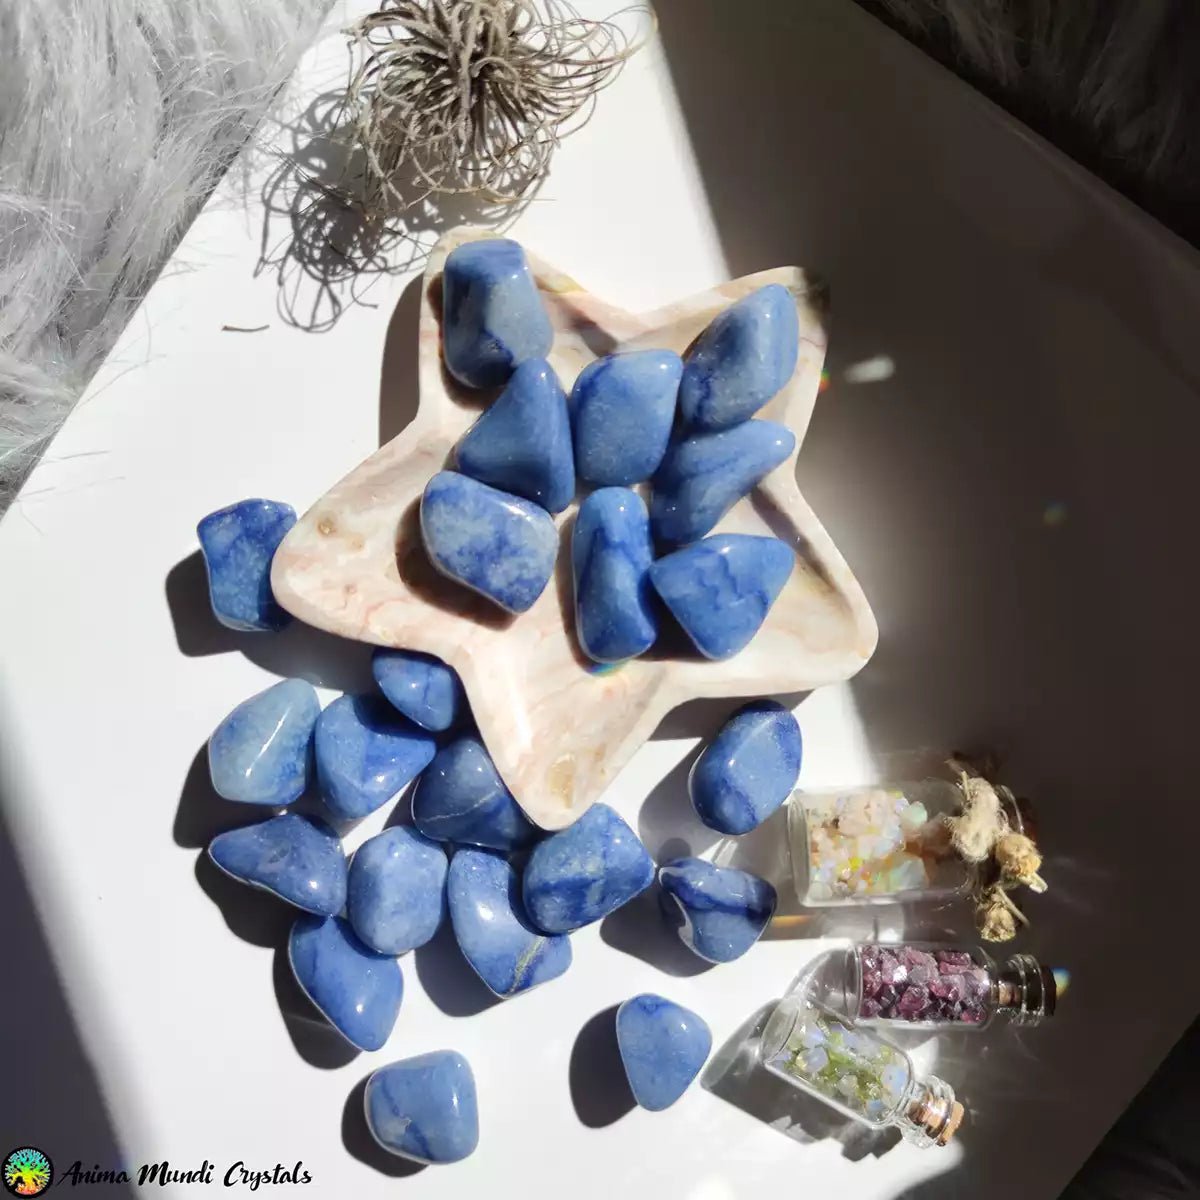 Dumortierite in Quartz Tumblestones - Blue Quartz - Anima Mundi Crystals